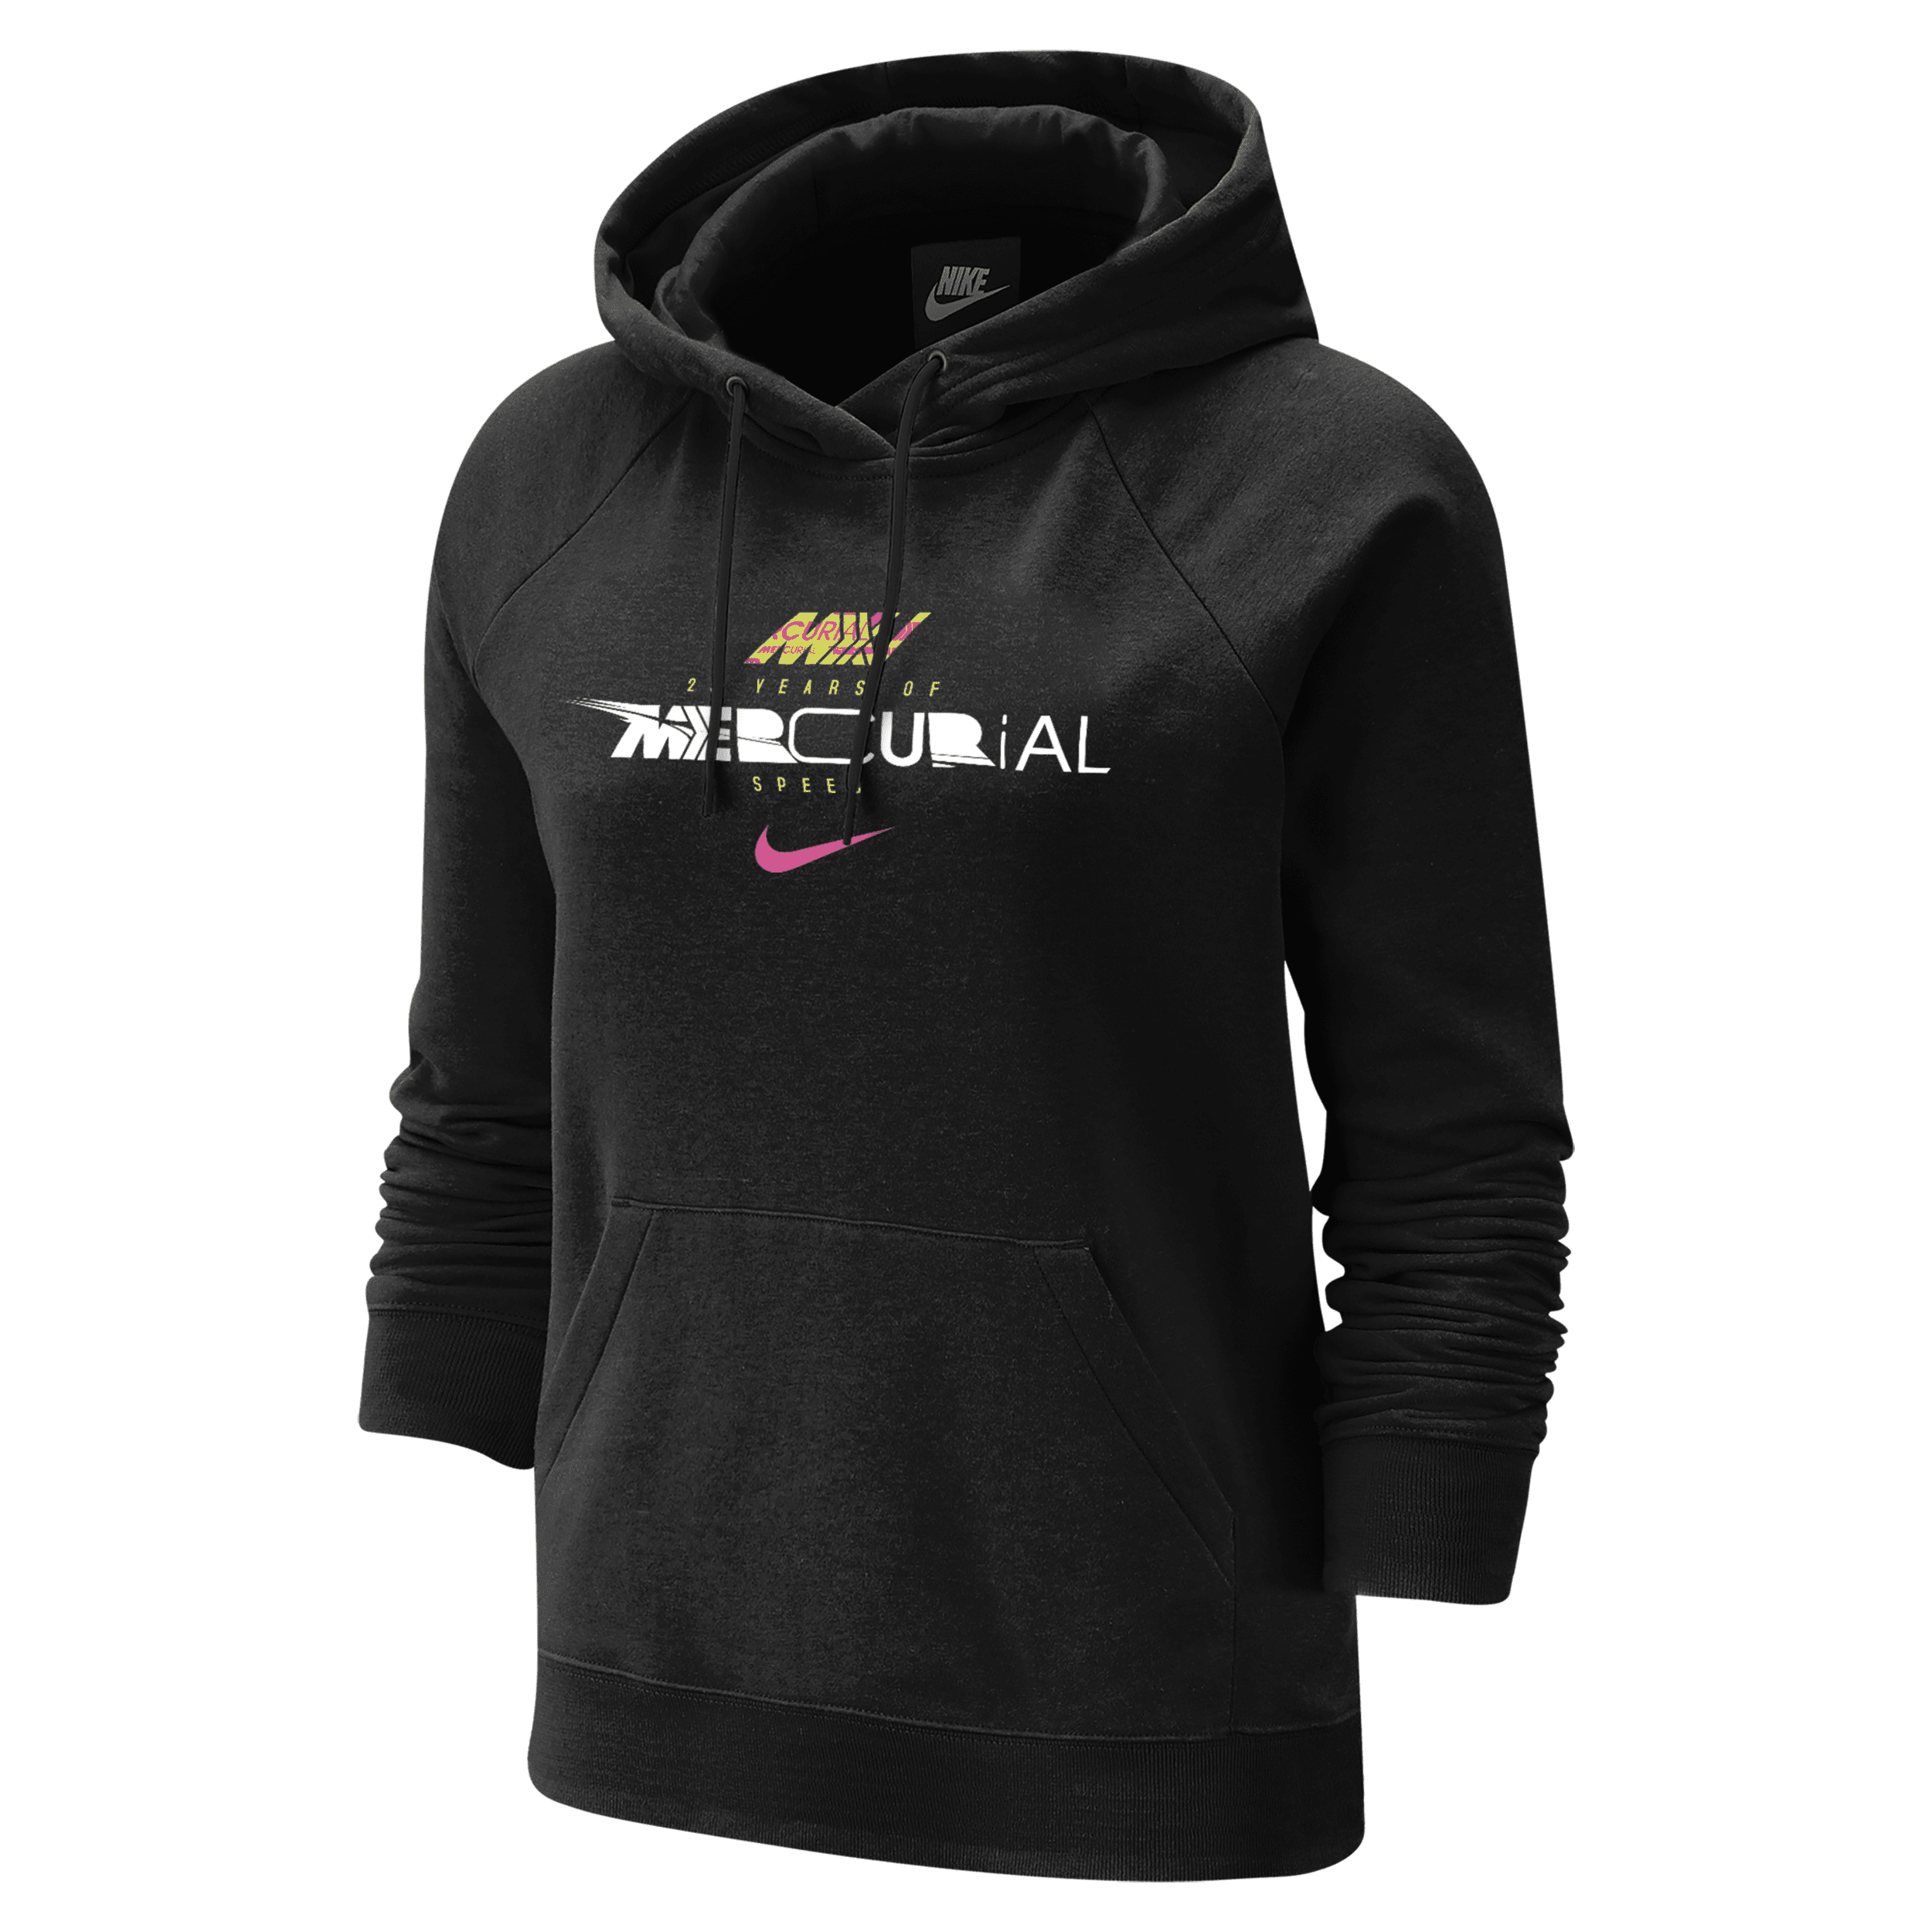 Nike Women's Mercurial 25th Anniversary Hoodie In Black